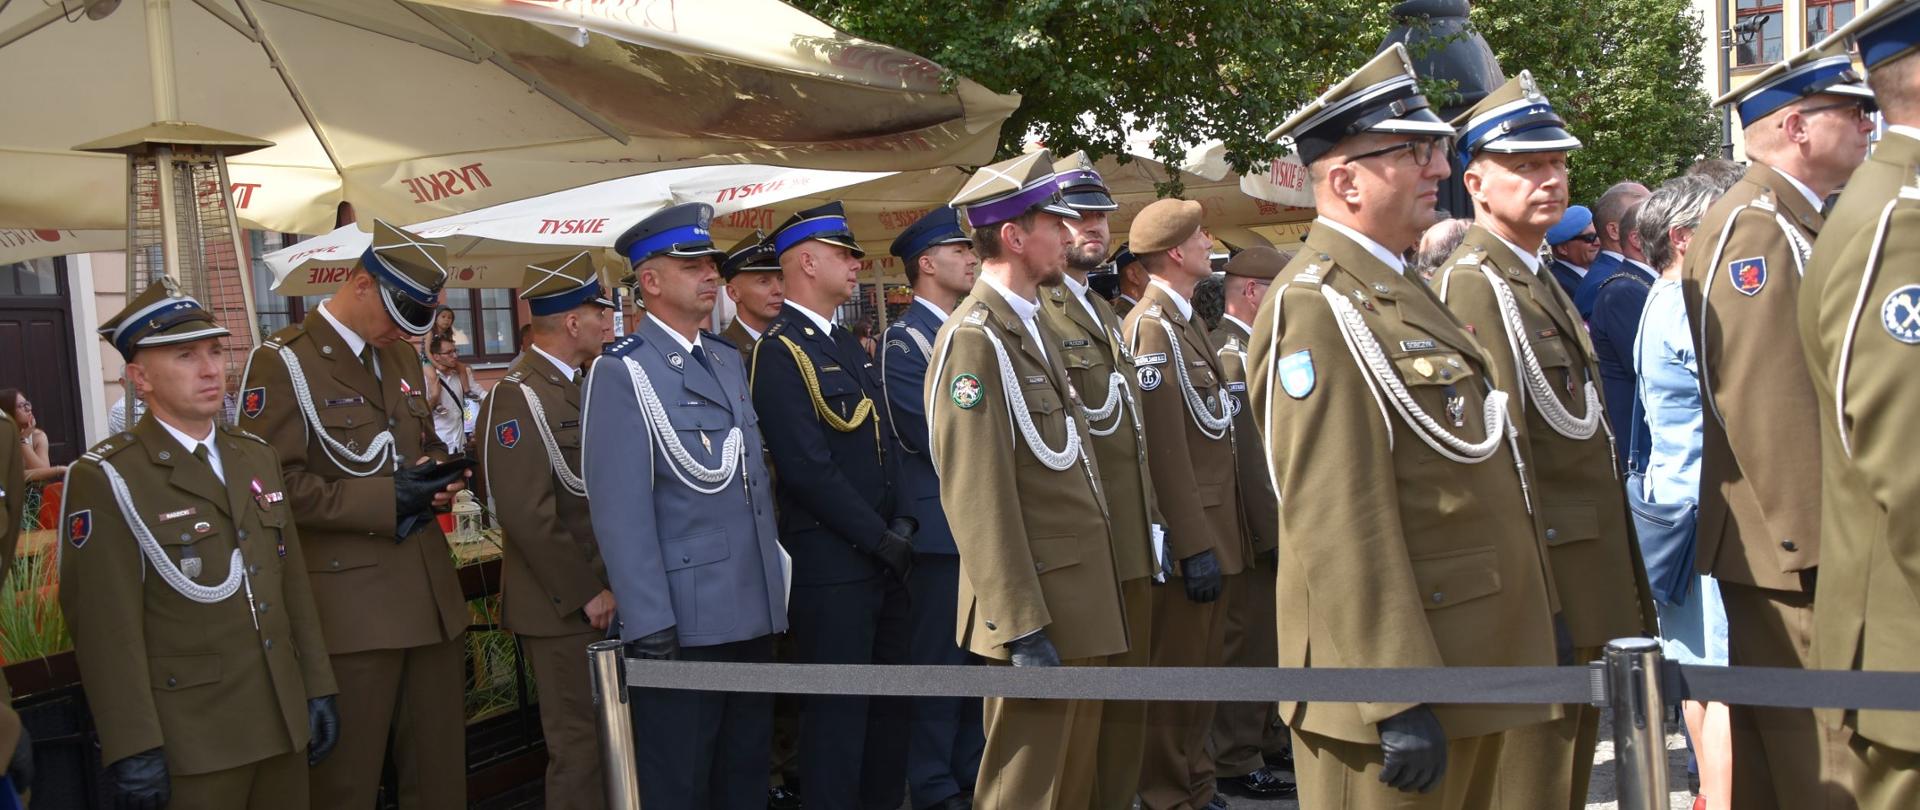 Zdjęcie przedstawia funkcjonariuszy wojska polskiego i innych służb mundurowych ubranych w mundury galowe stojących w rzędach podczas zbiórki.